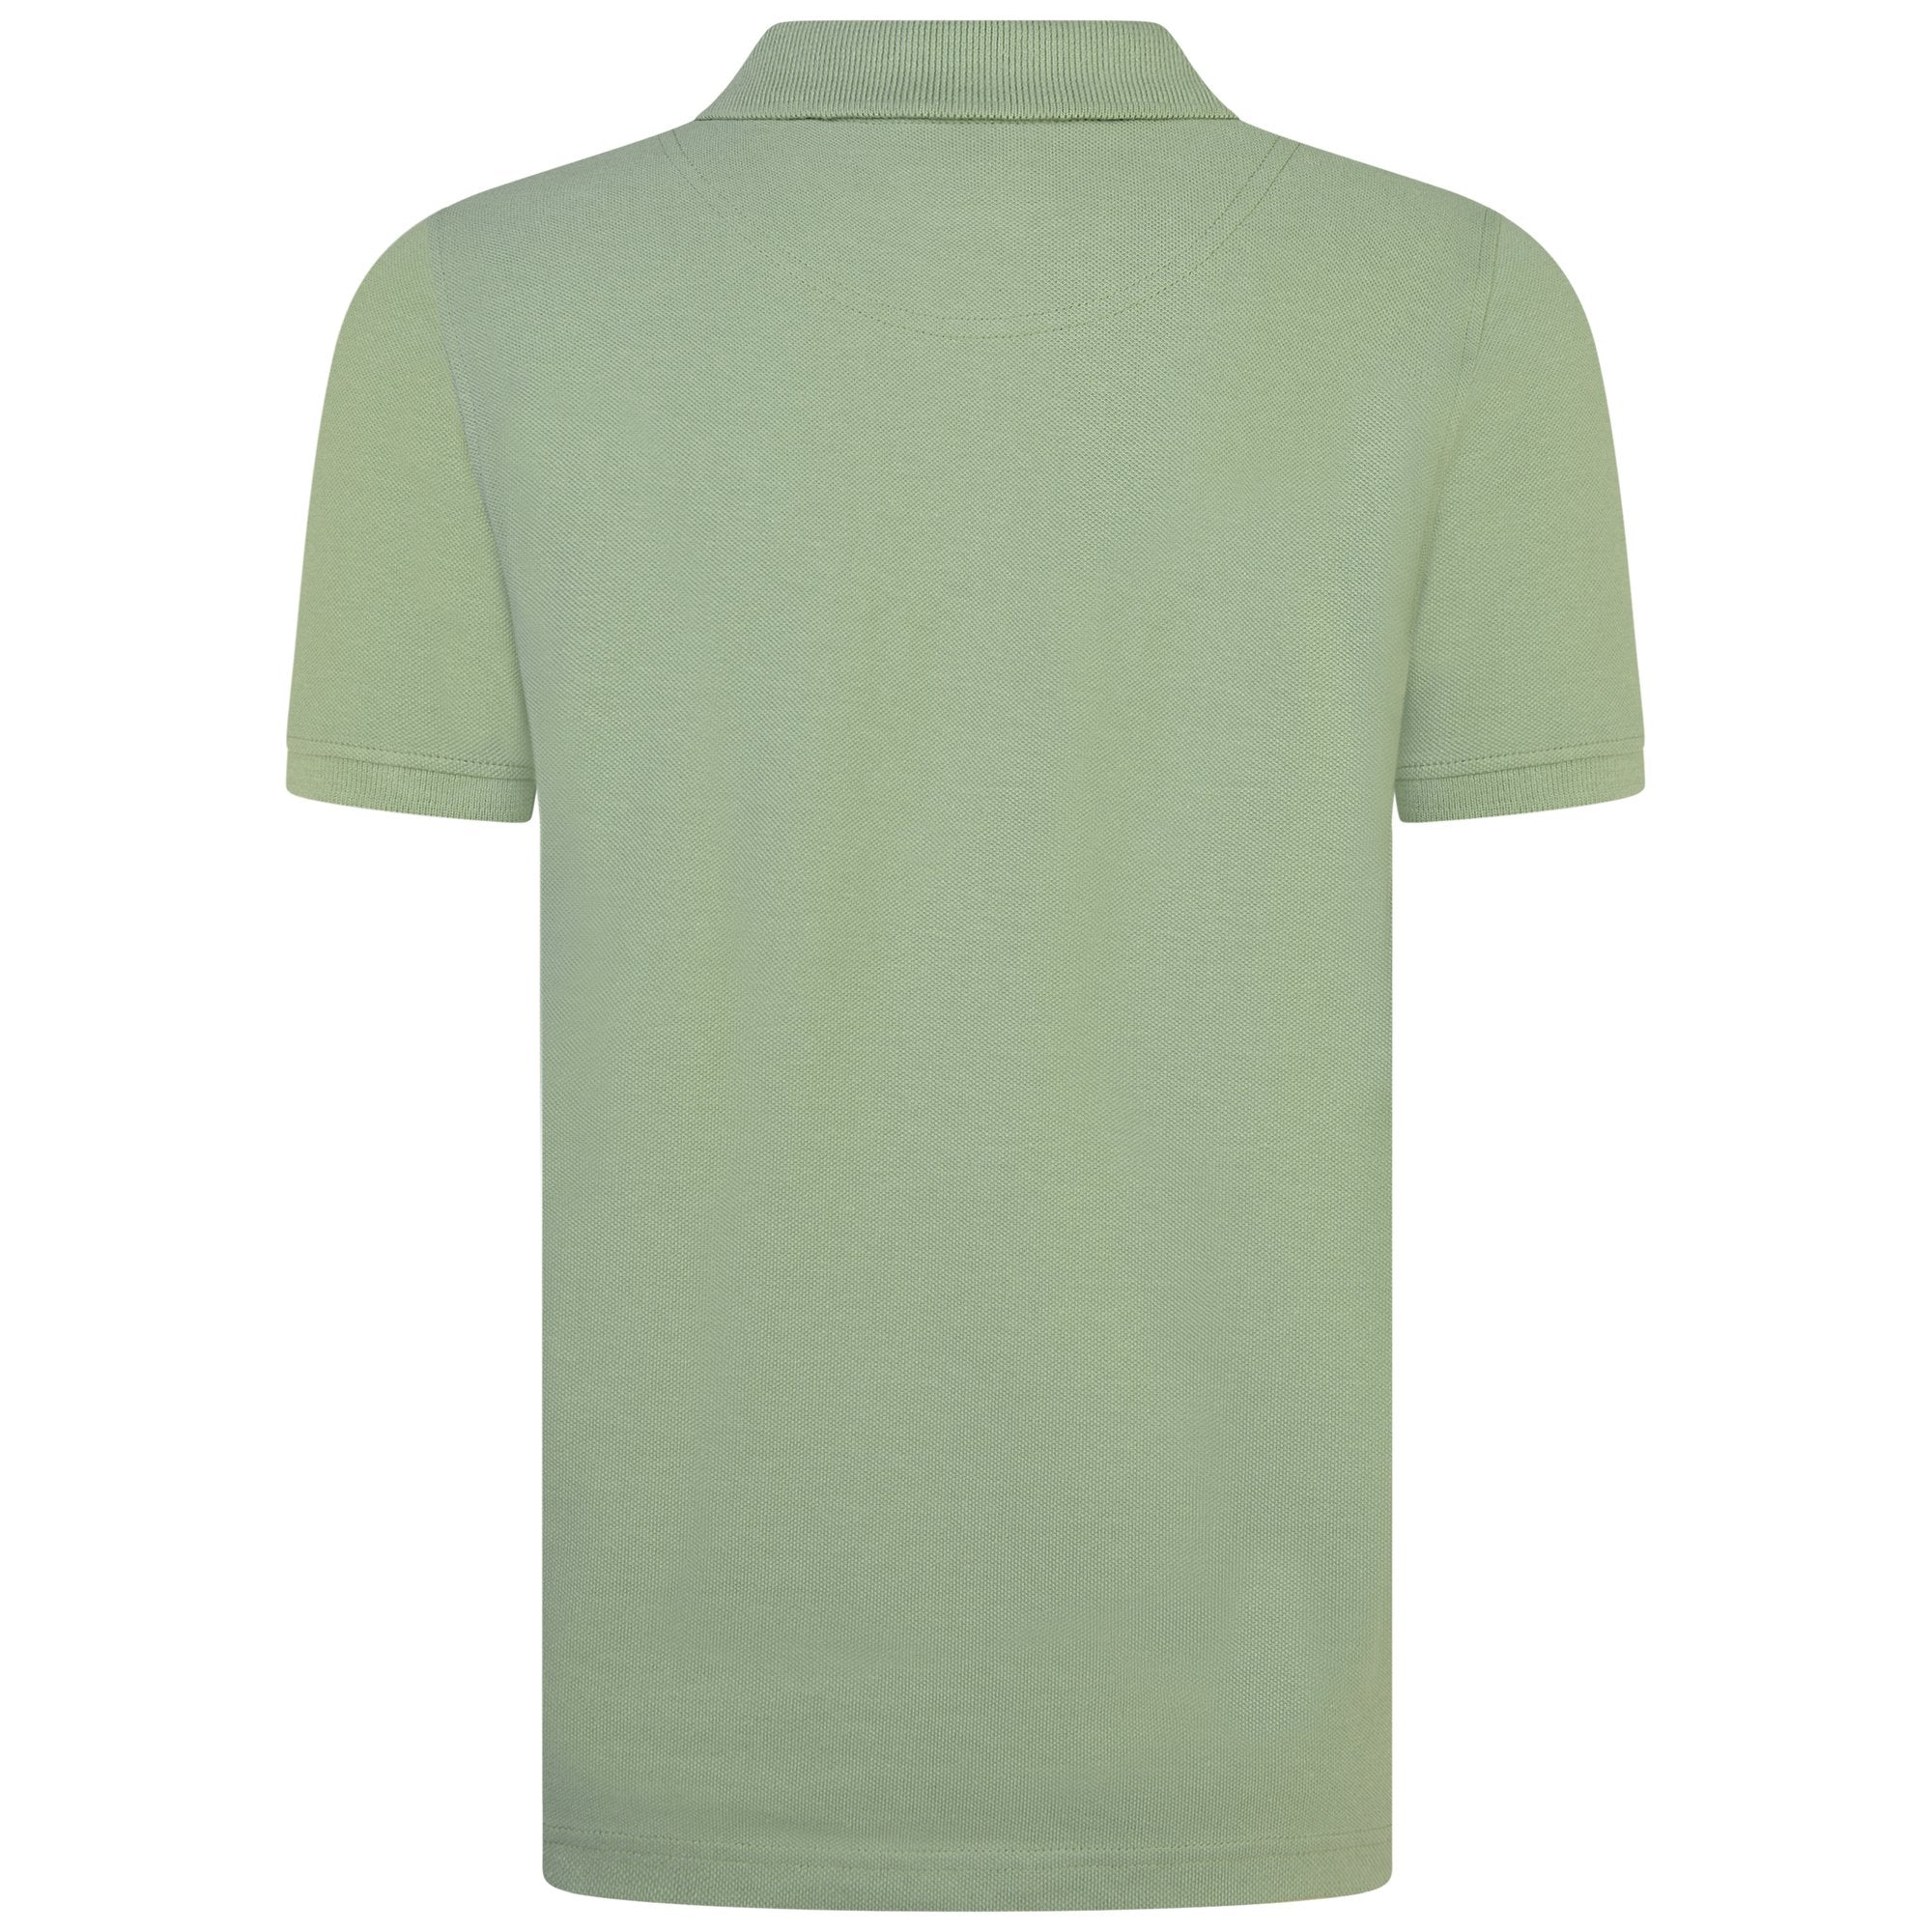 Jongens Classic Polo Shirt Hedge Green van Lyle & Scott in de kleur Hedge Green in maat 170-176.